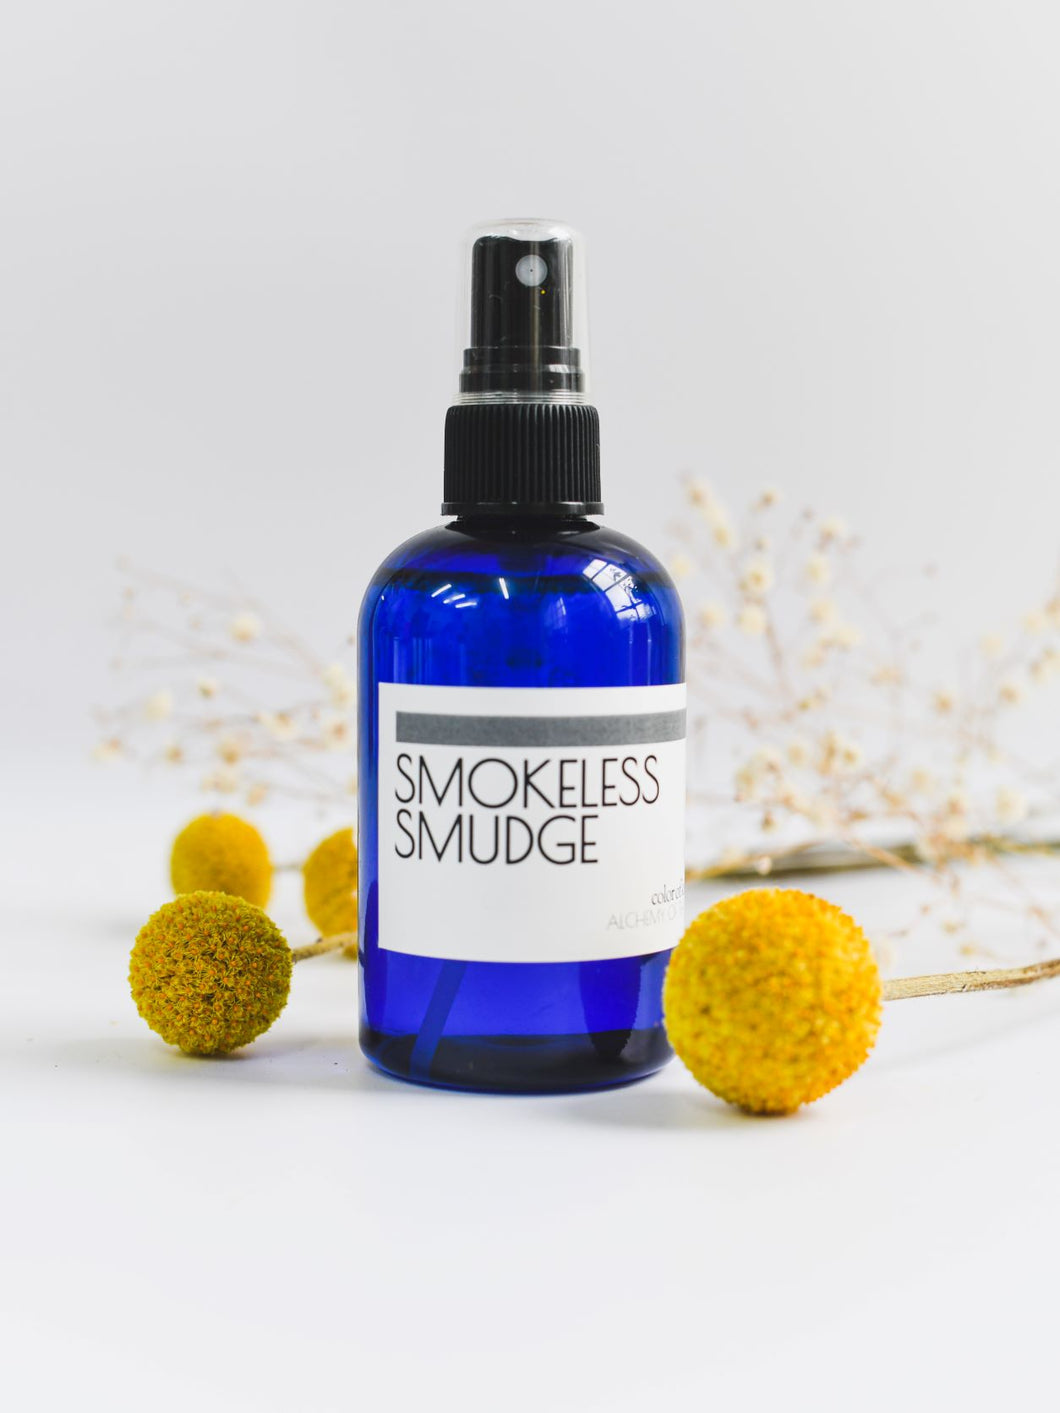 Smokeless Smudge Spray